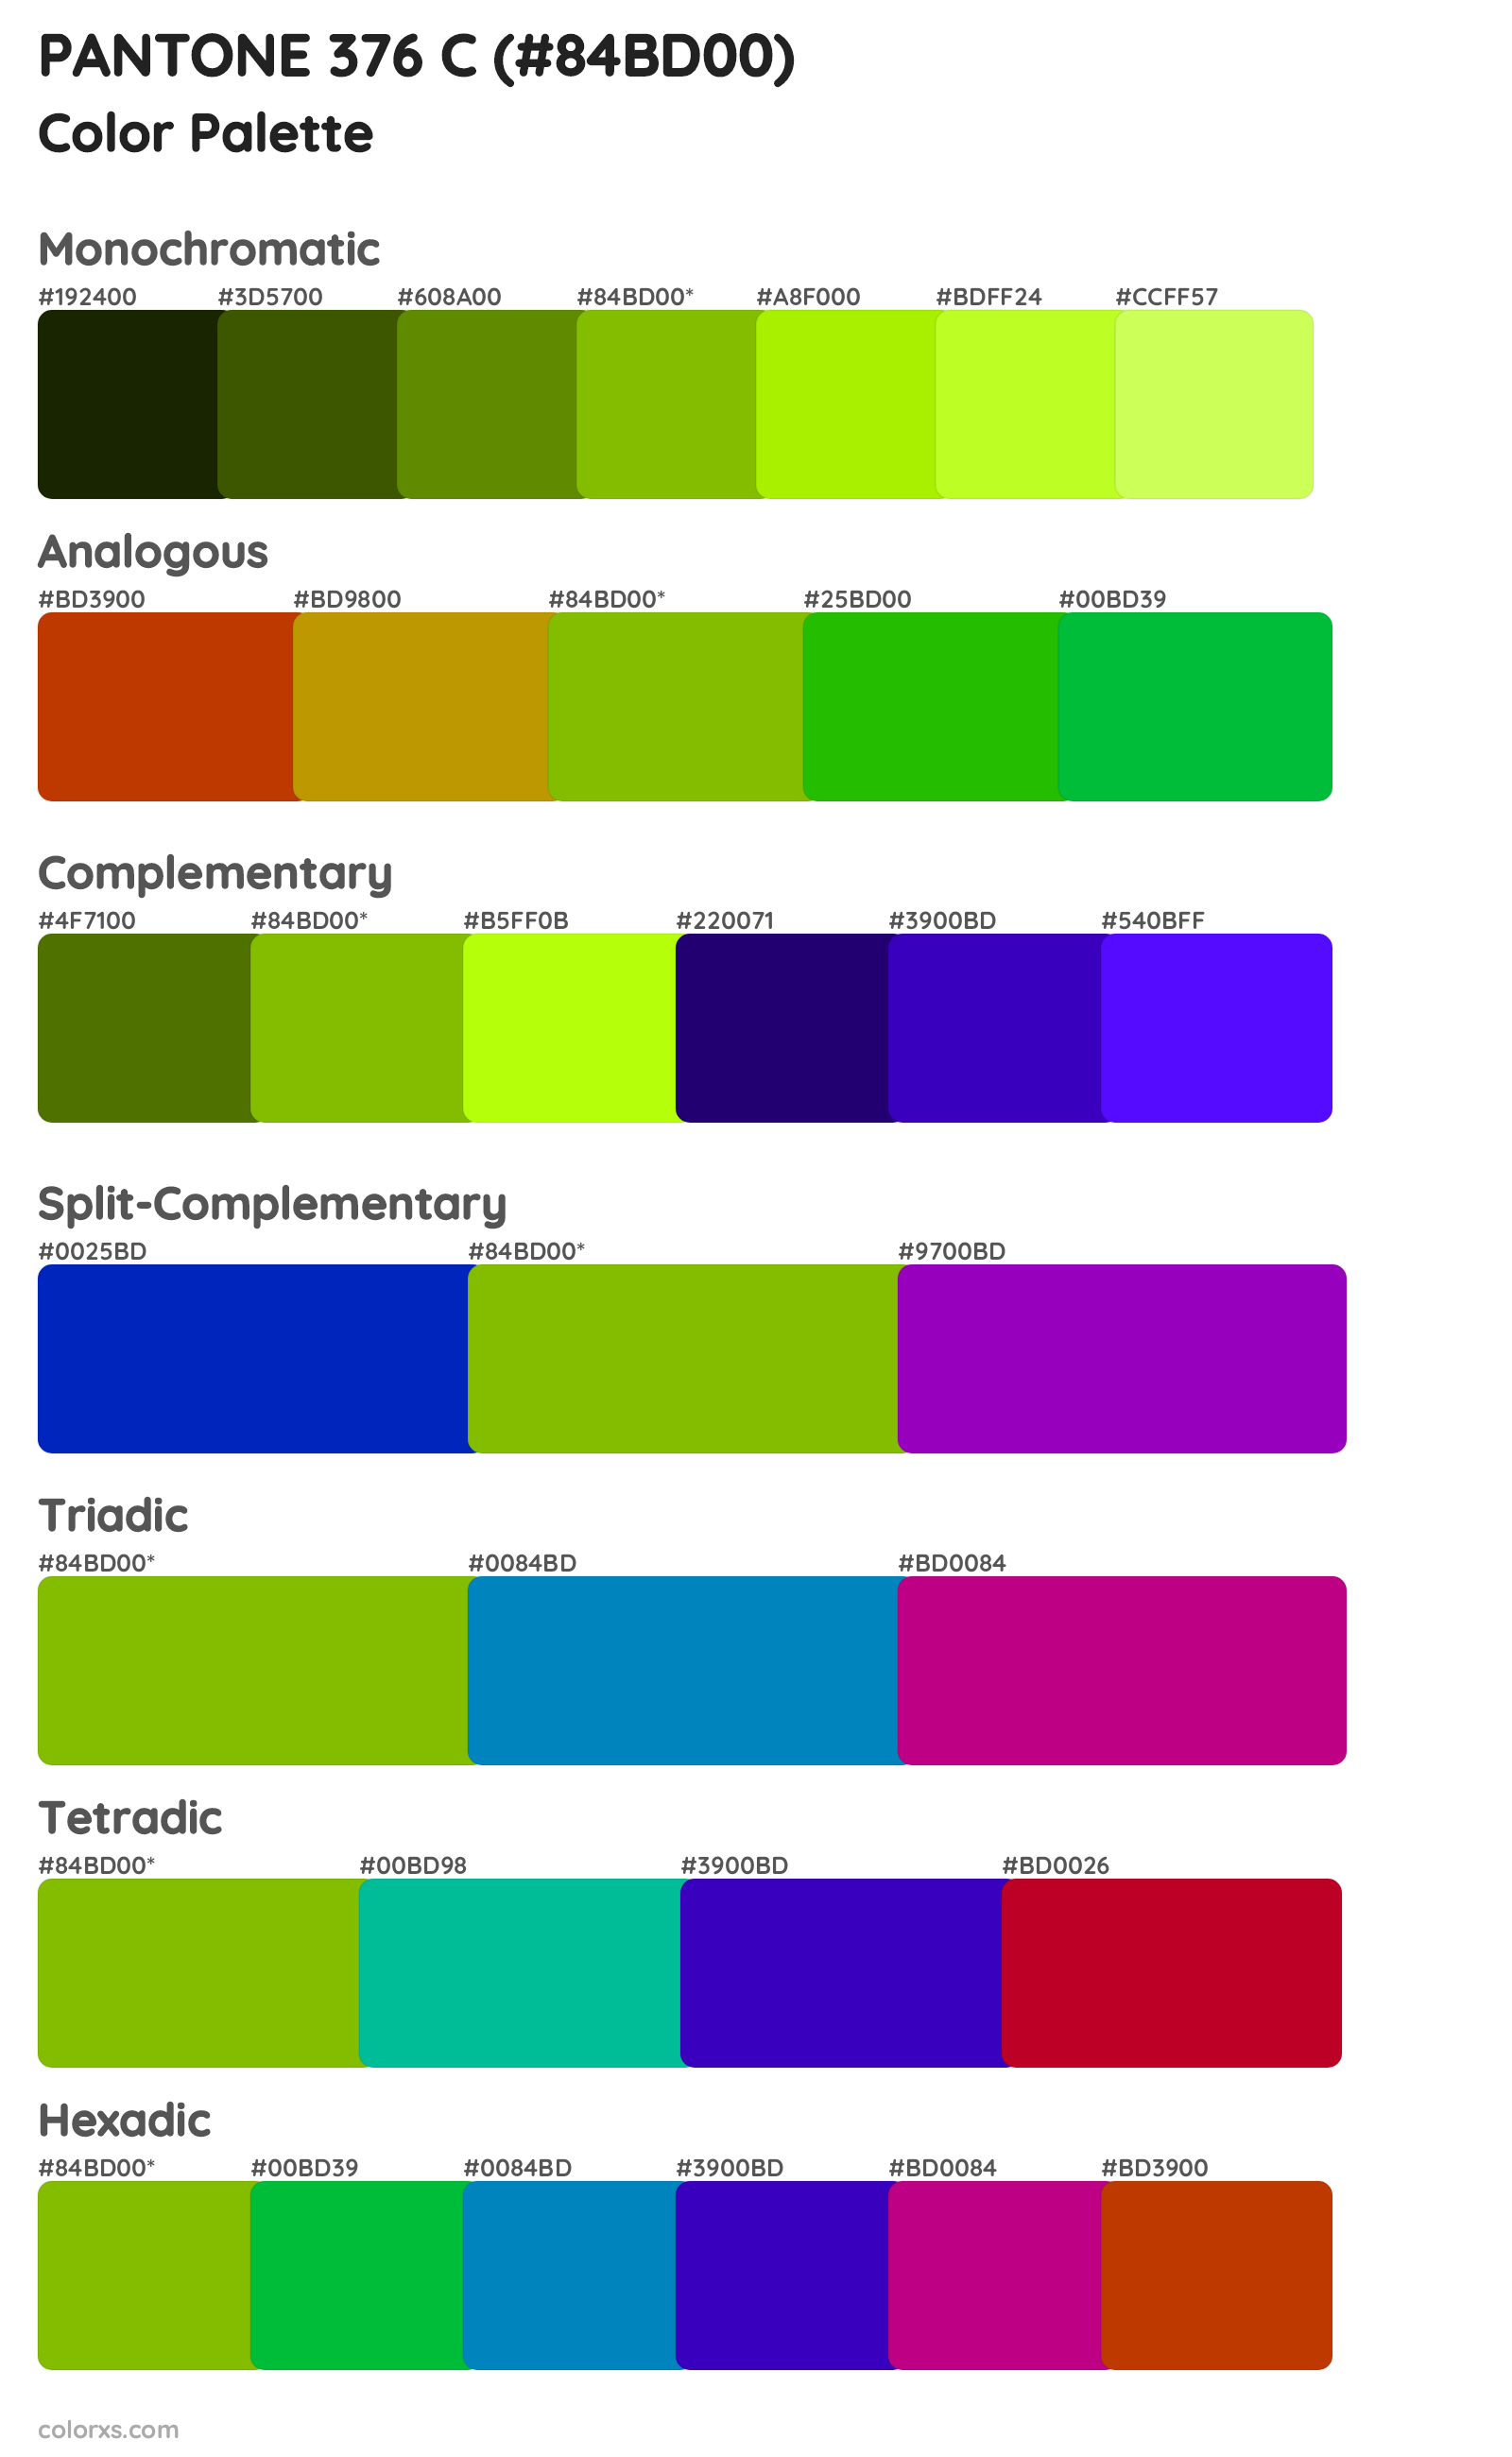 PANTONE 376 C Color Scheme Palettes